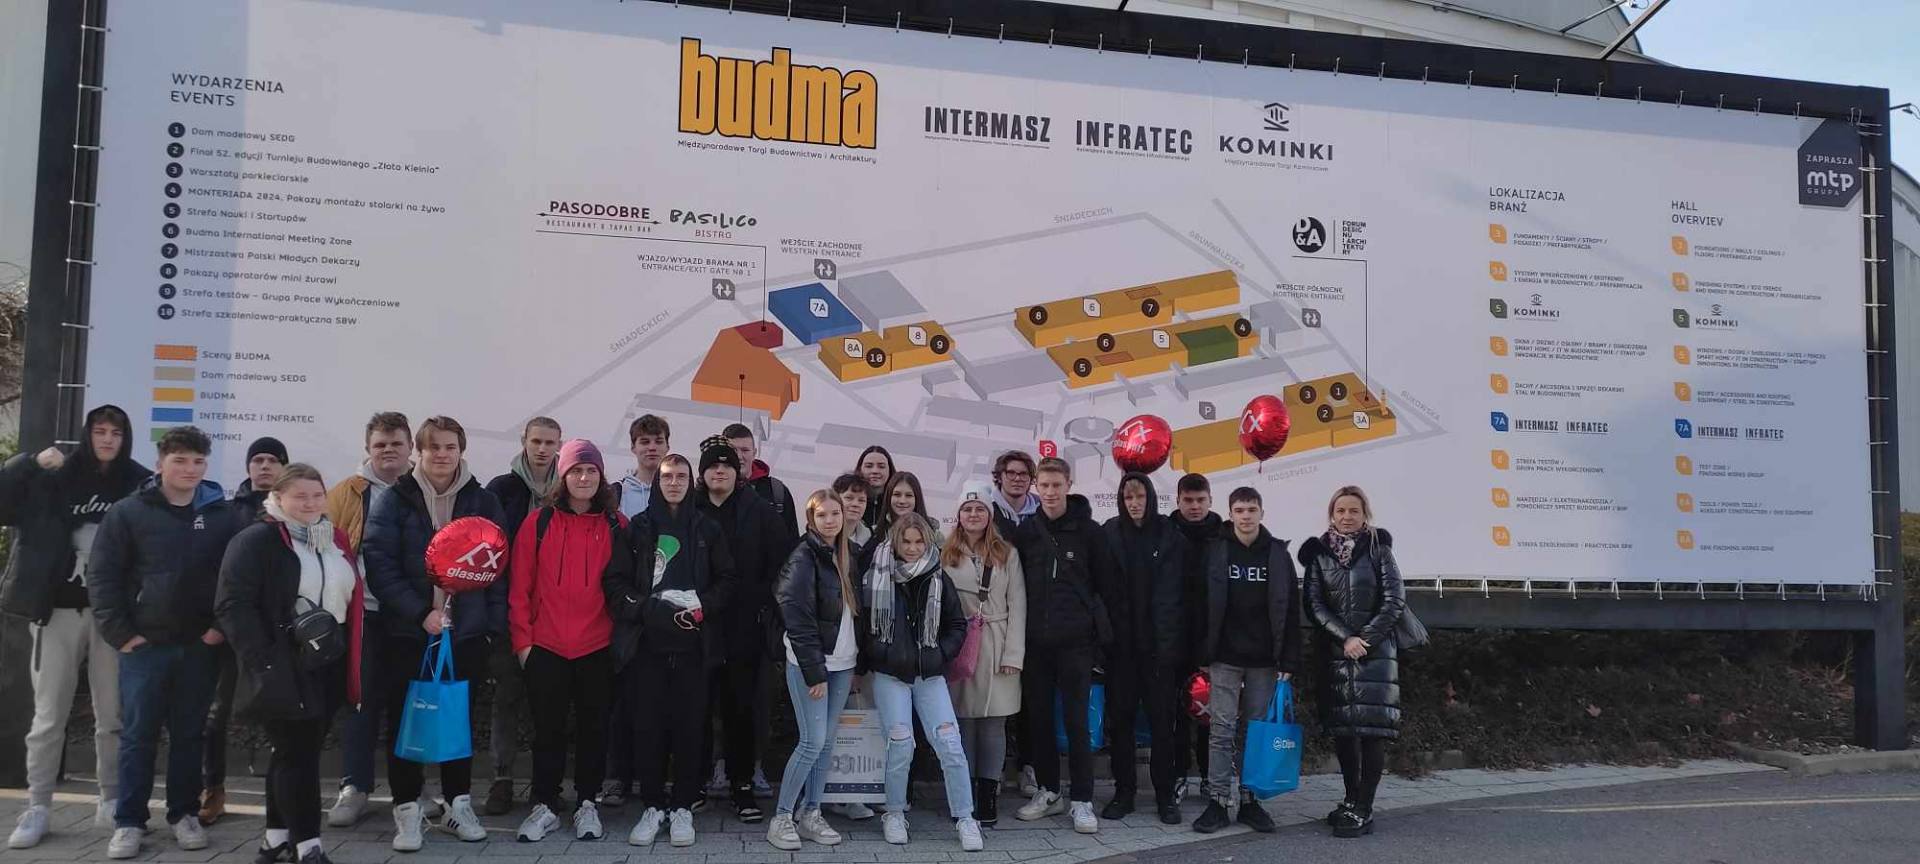 Klasa 3 Technikum Budowlanego uczestniczy wycieczce zawodowej na targi budowlane BUDMA w Poznaniu.